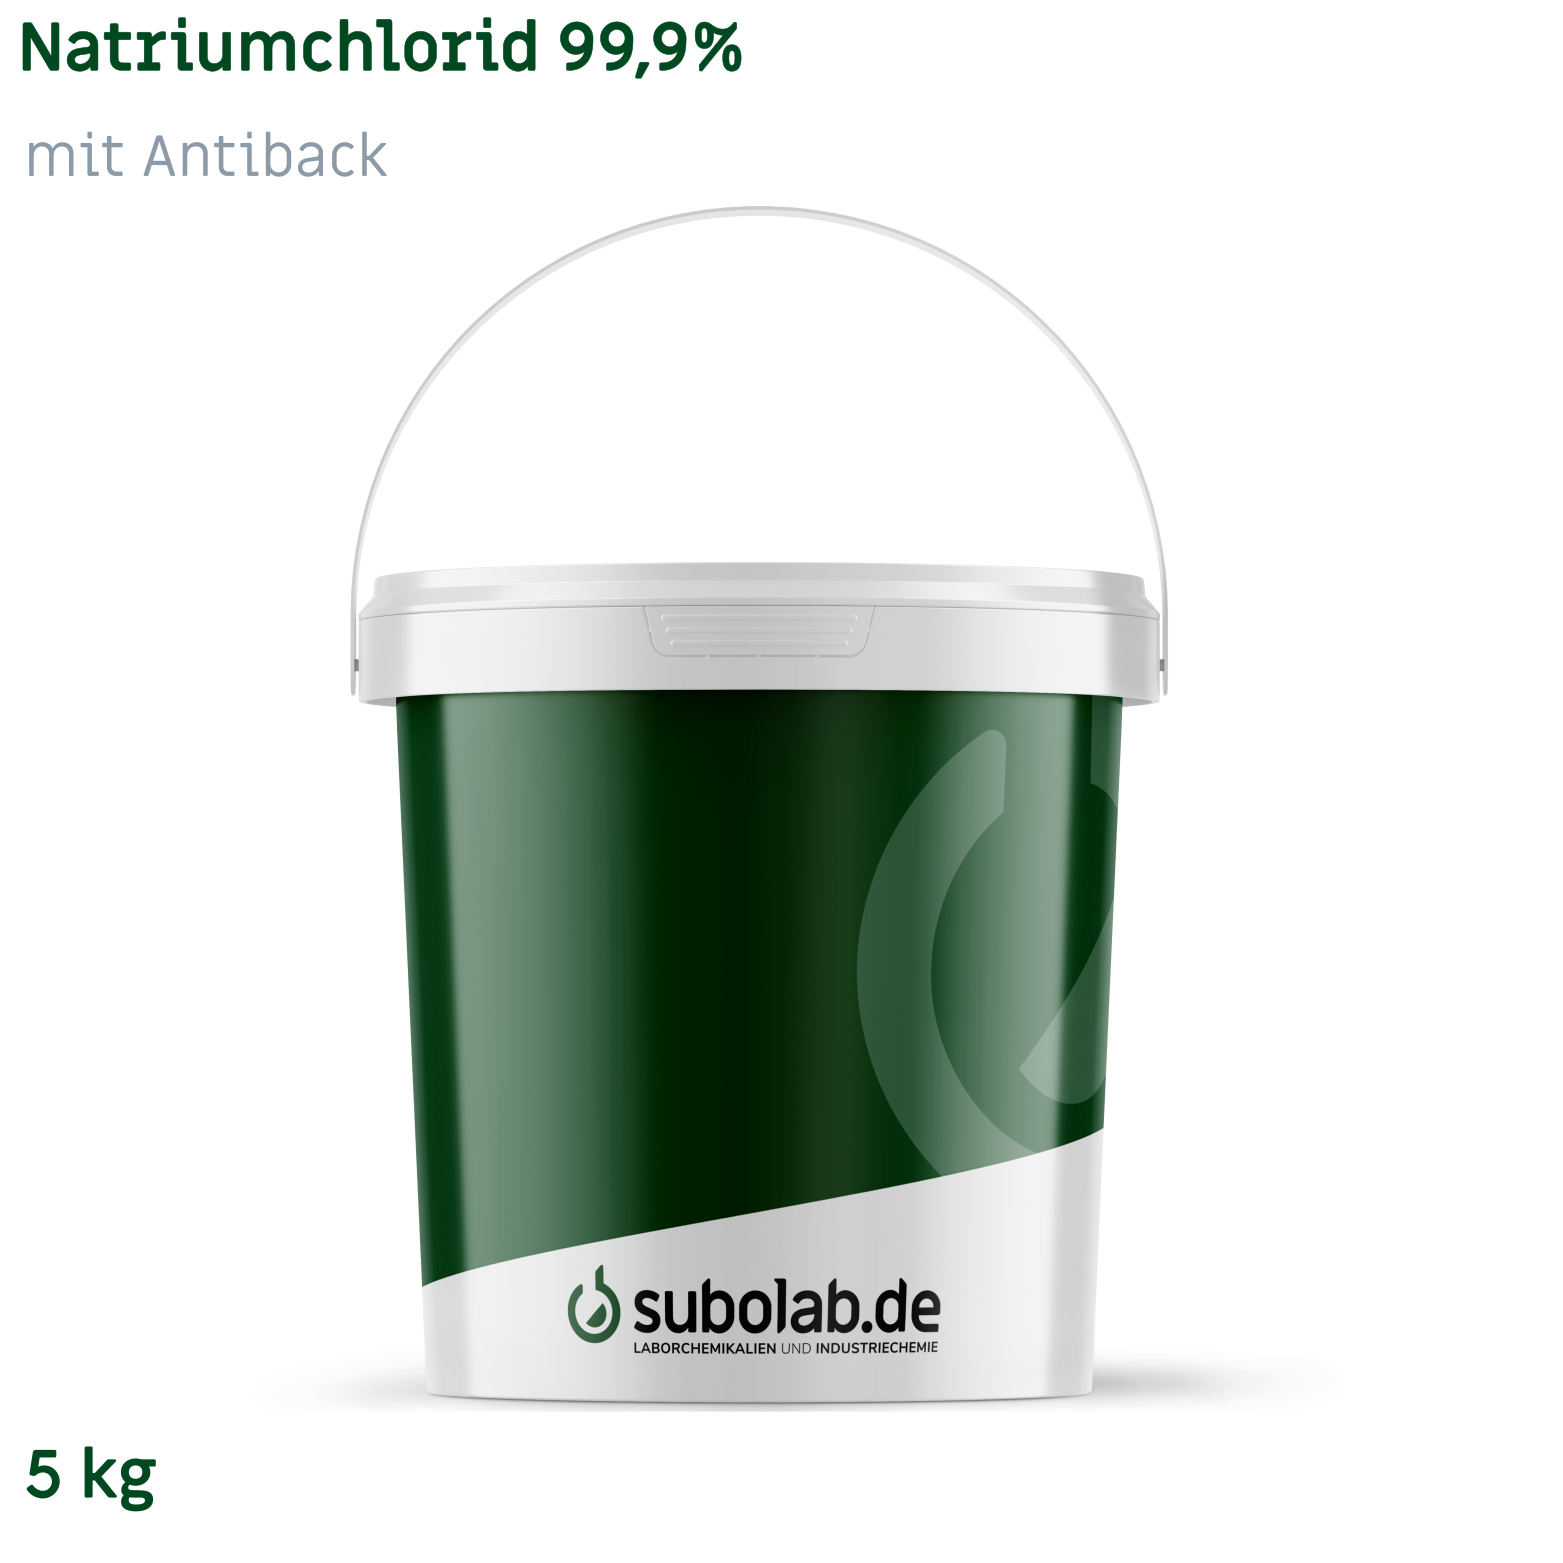 Bild von Natriumchlorid 99,9% mit Antiback (5 kg)